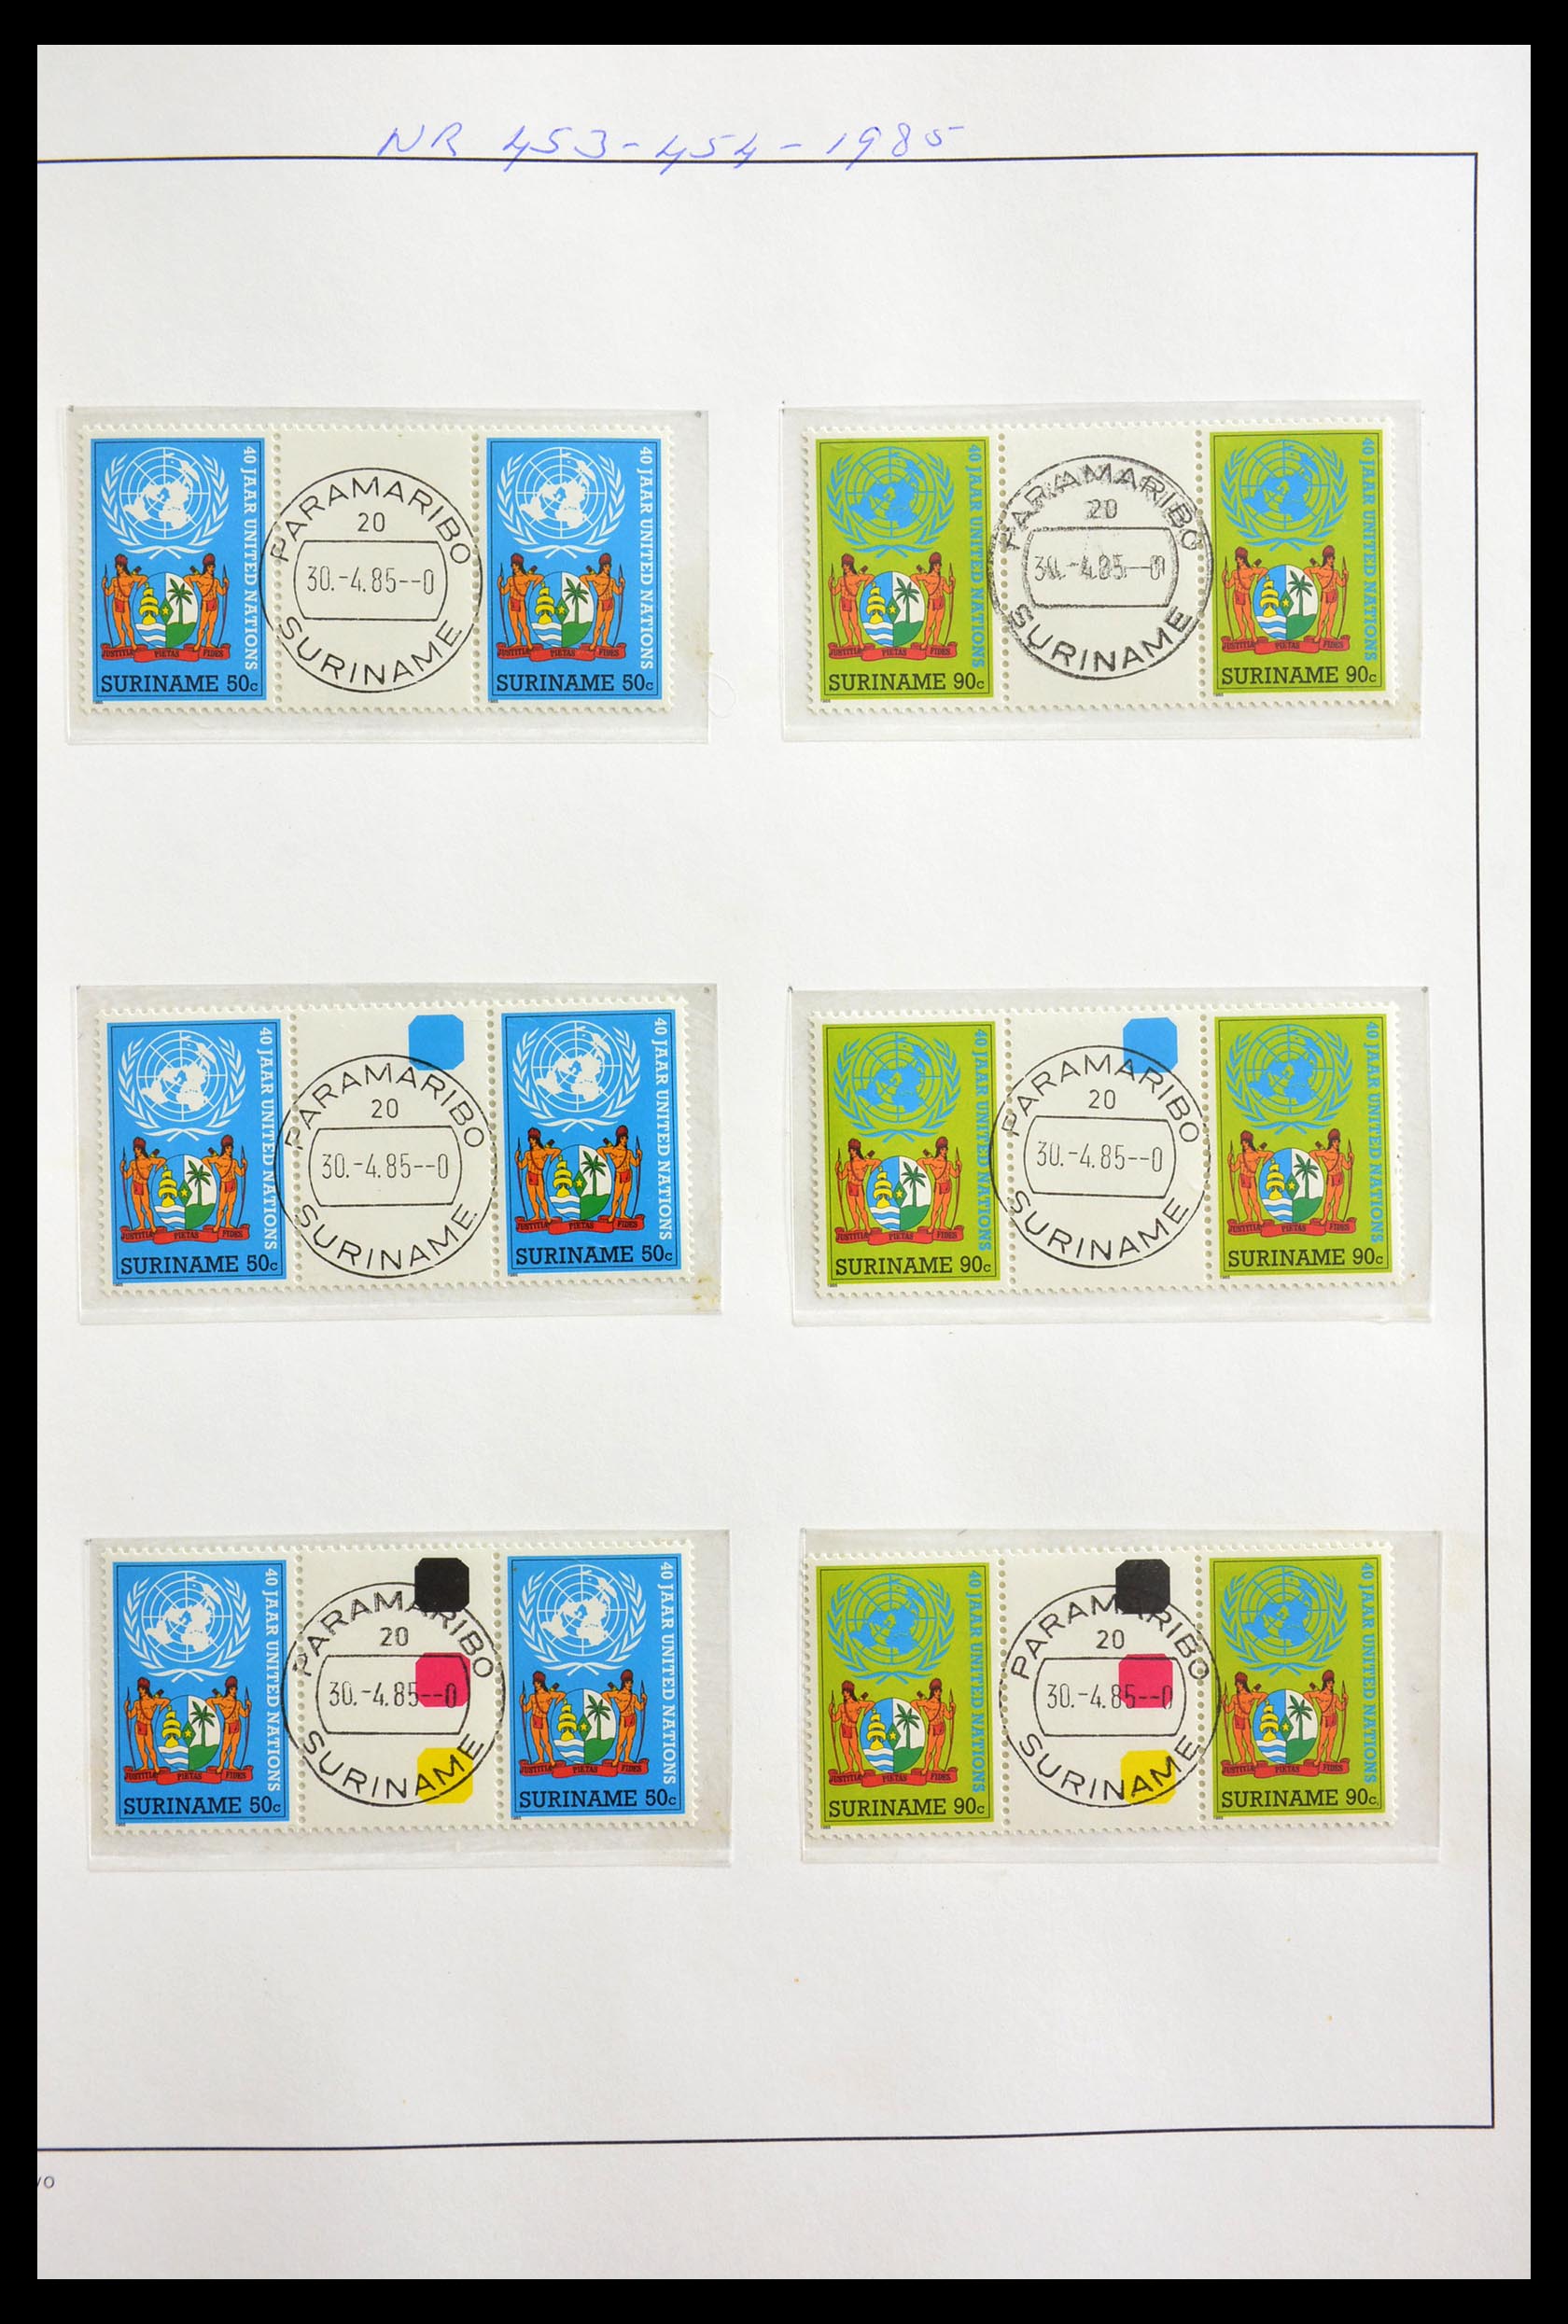 29154 023 - 29154 Suriname brugparen 1977-2003.